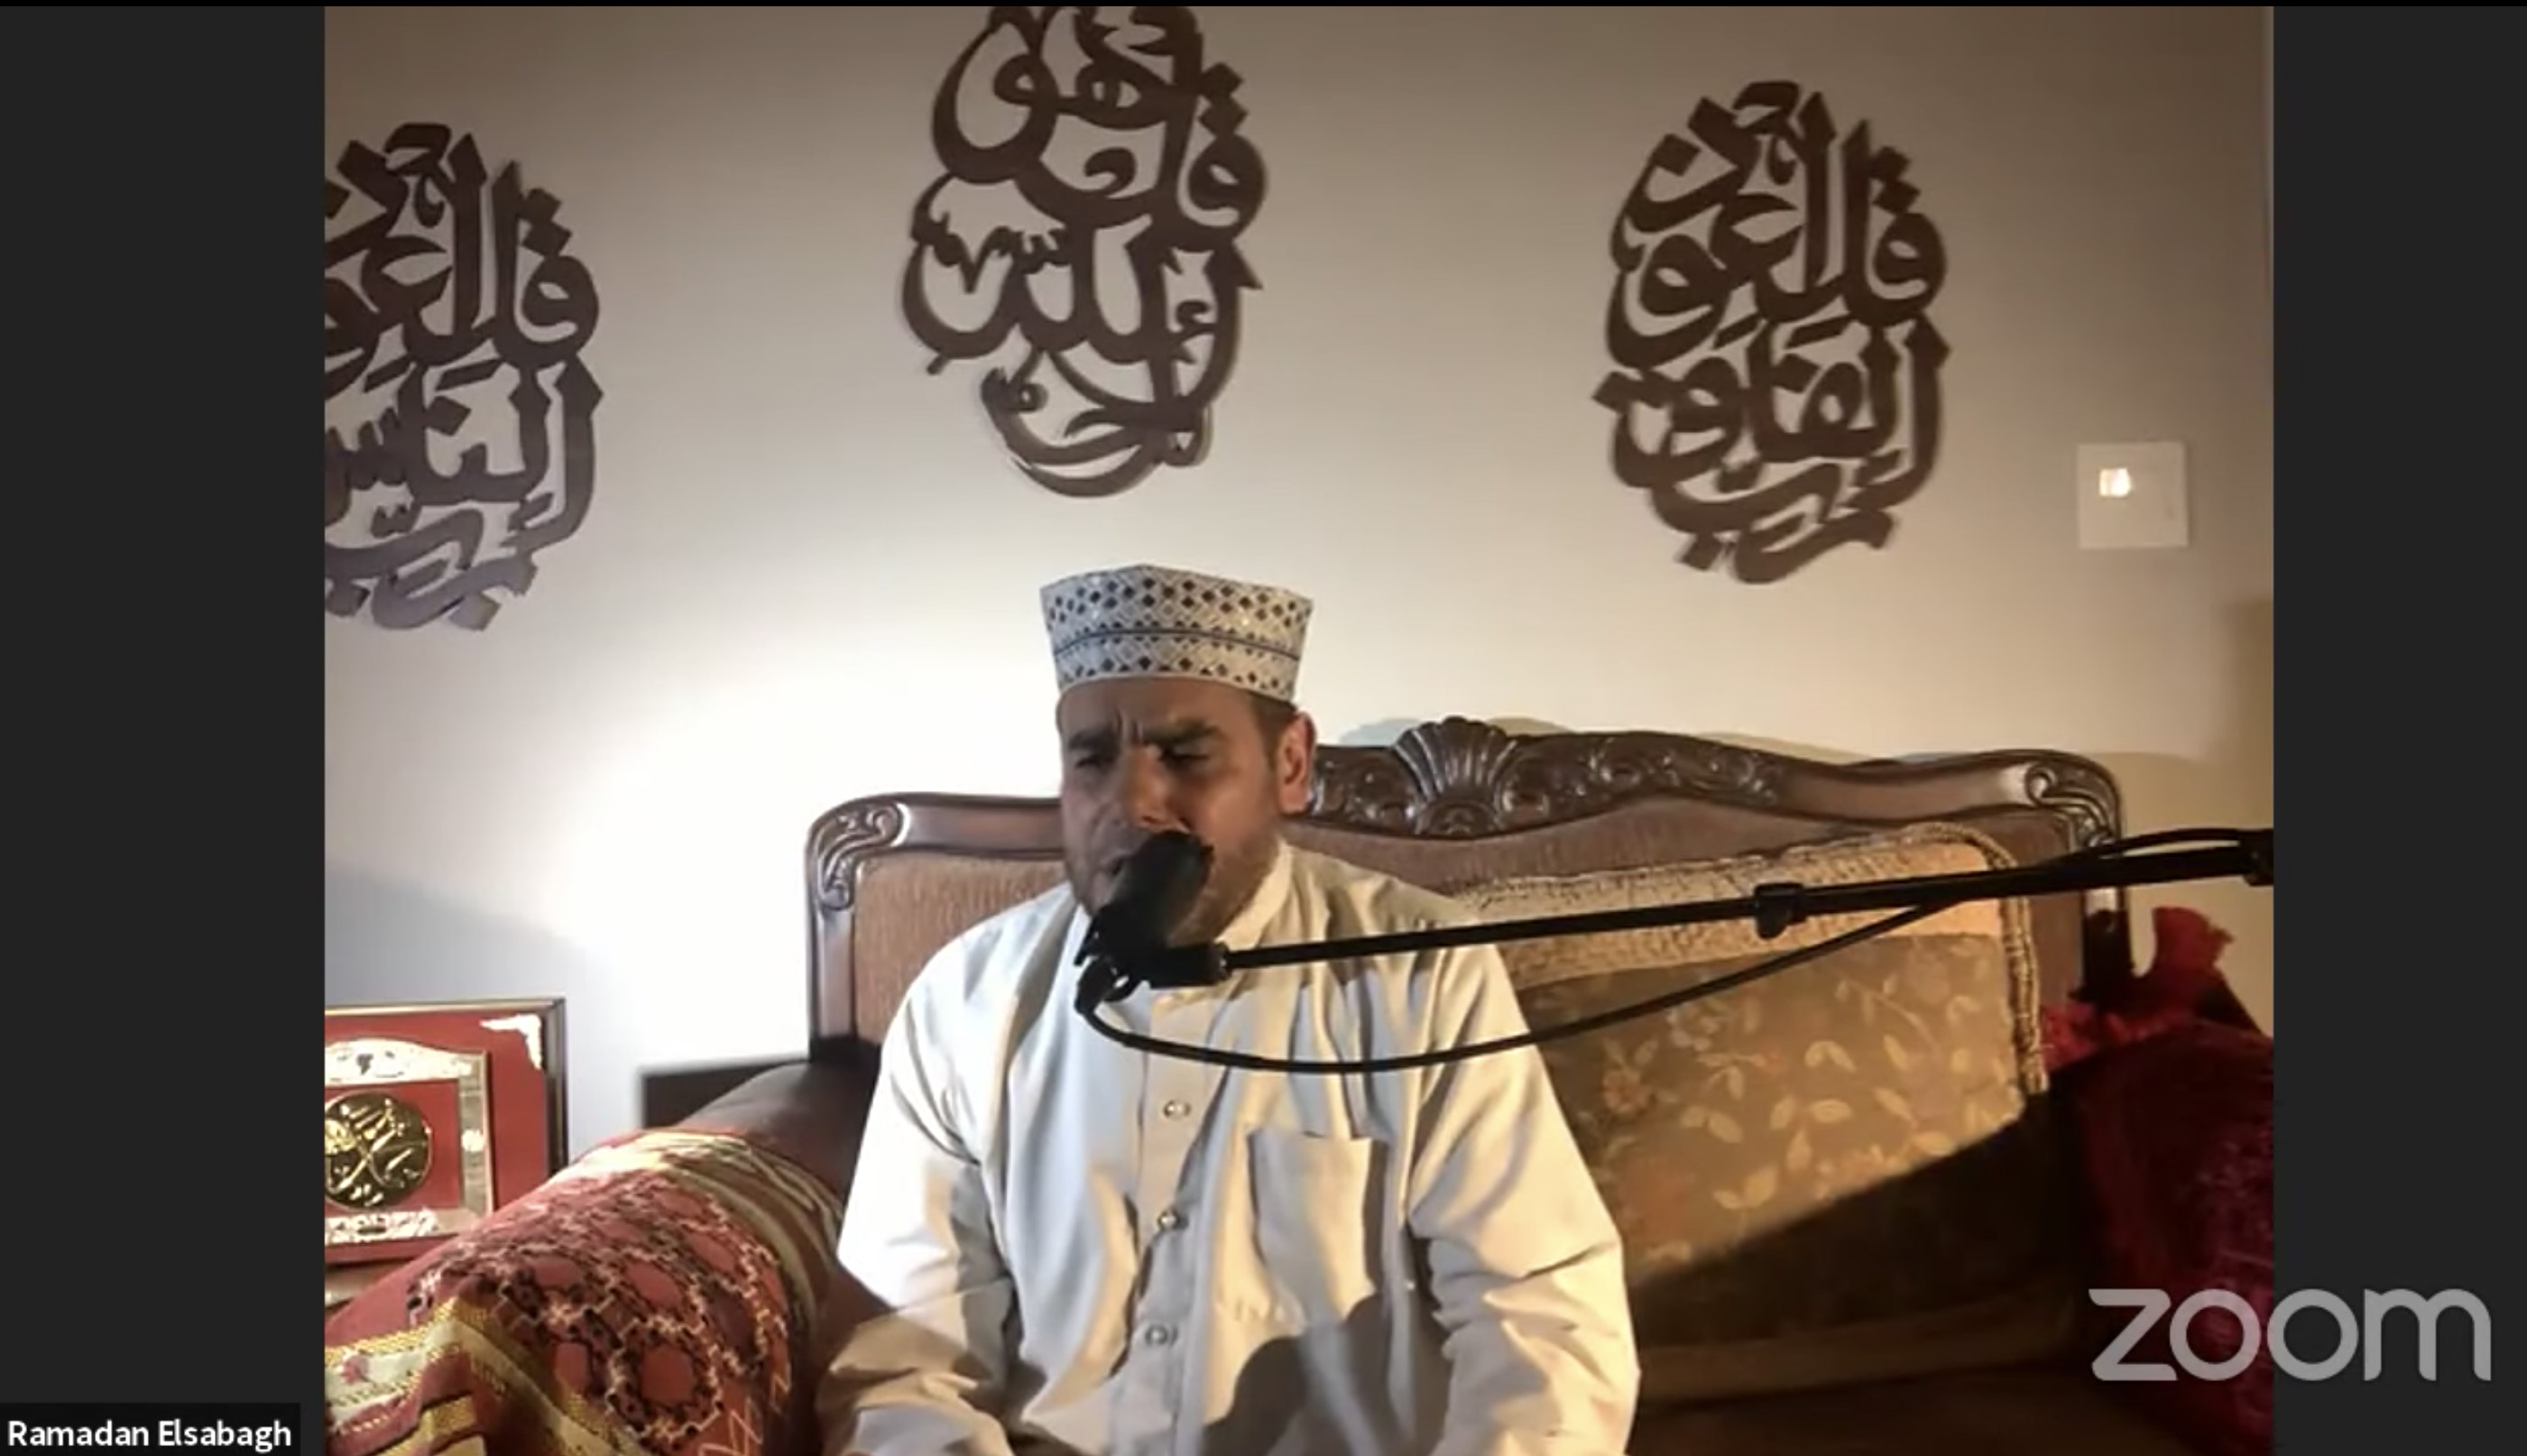 An Imam recites Qur'an while sitting down.